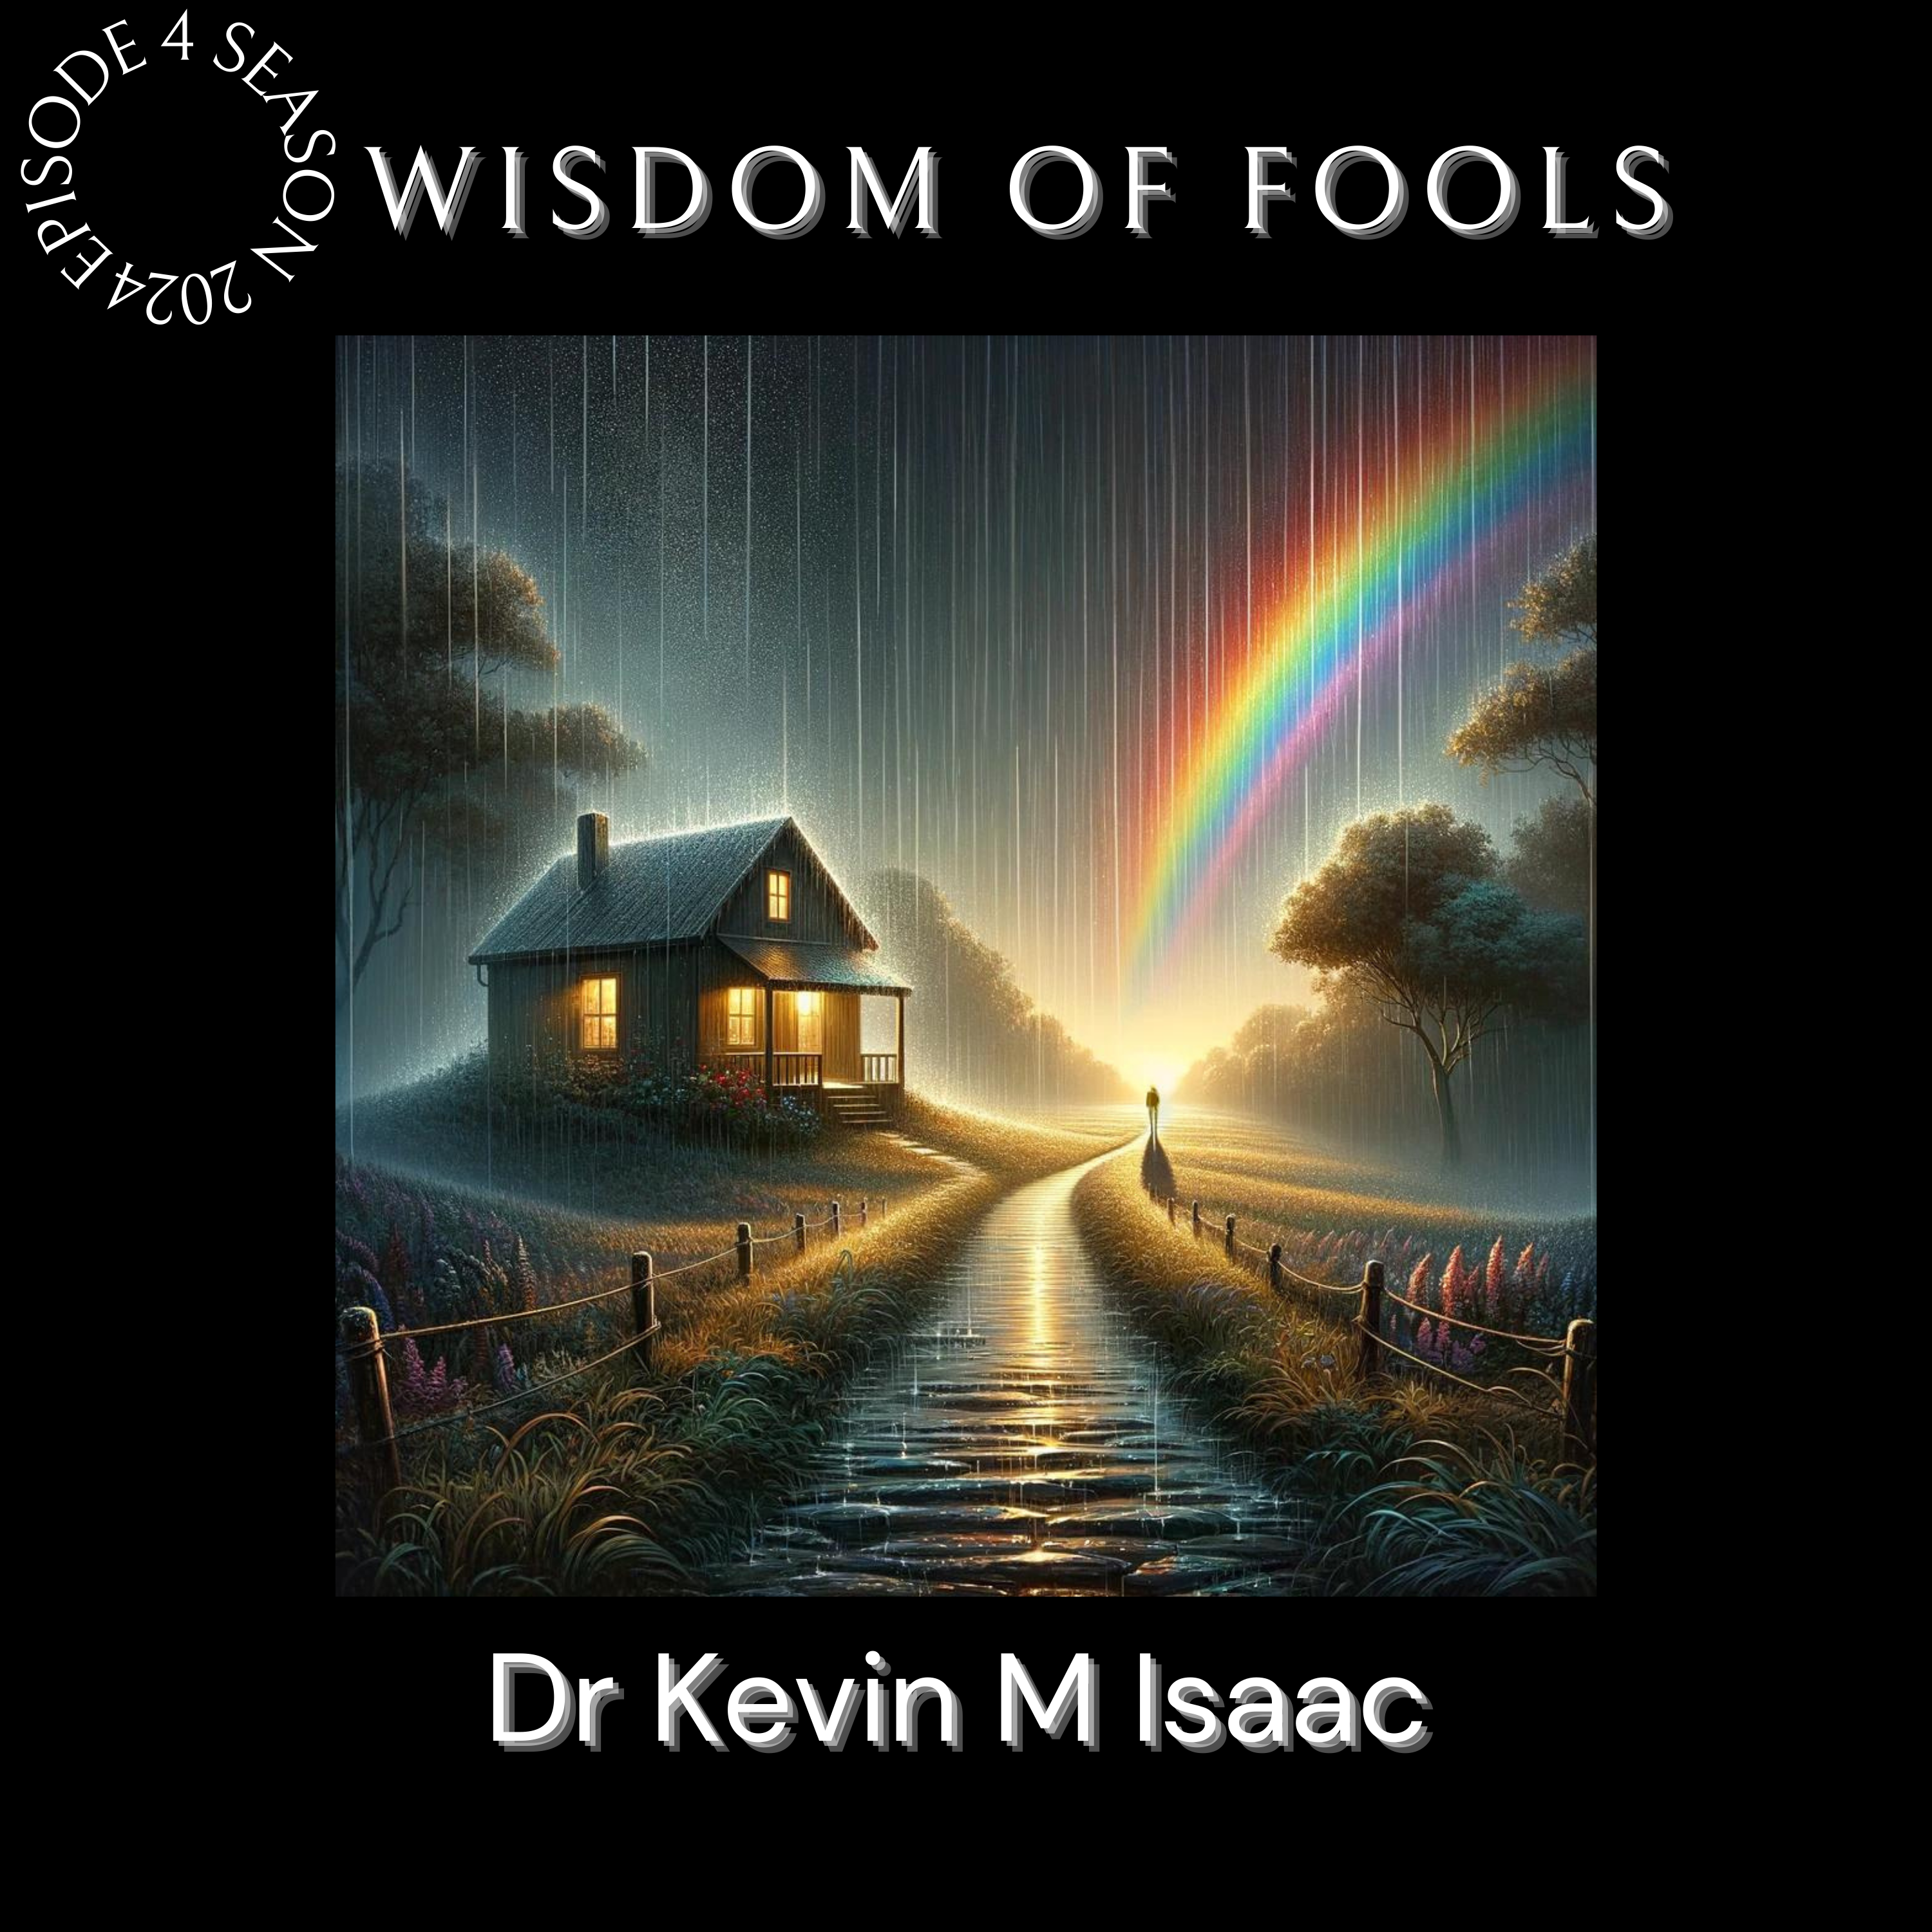 Wisdom of fools